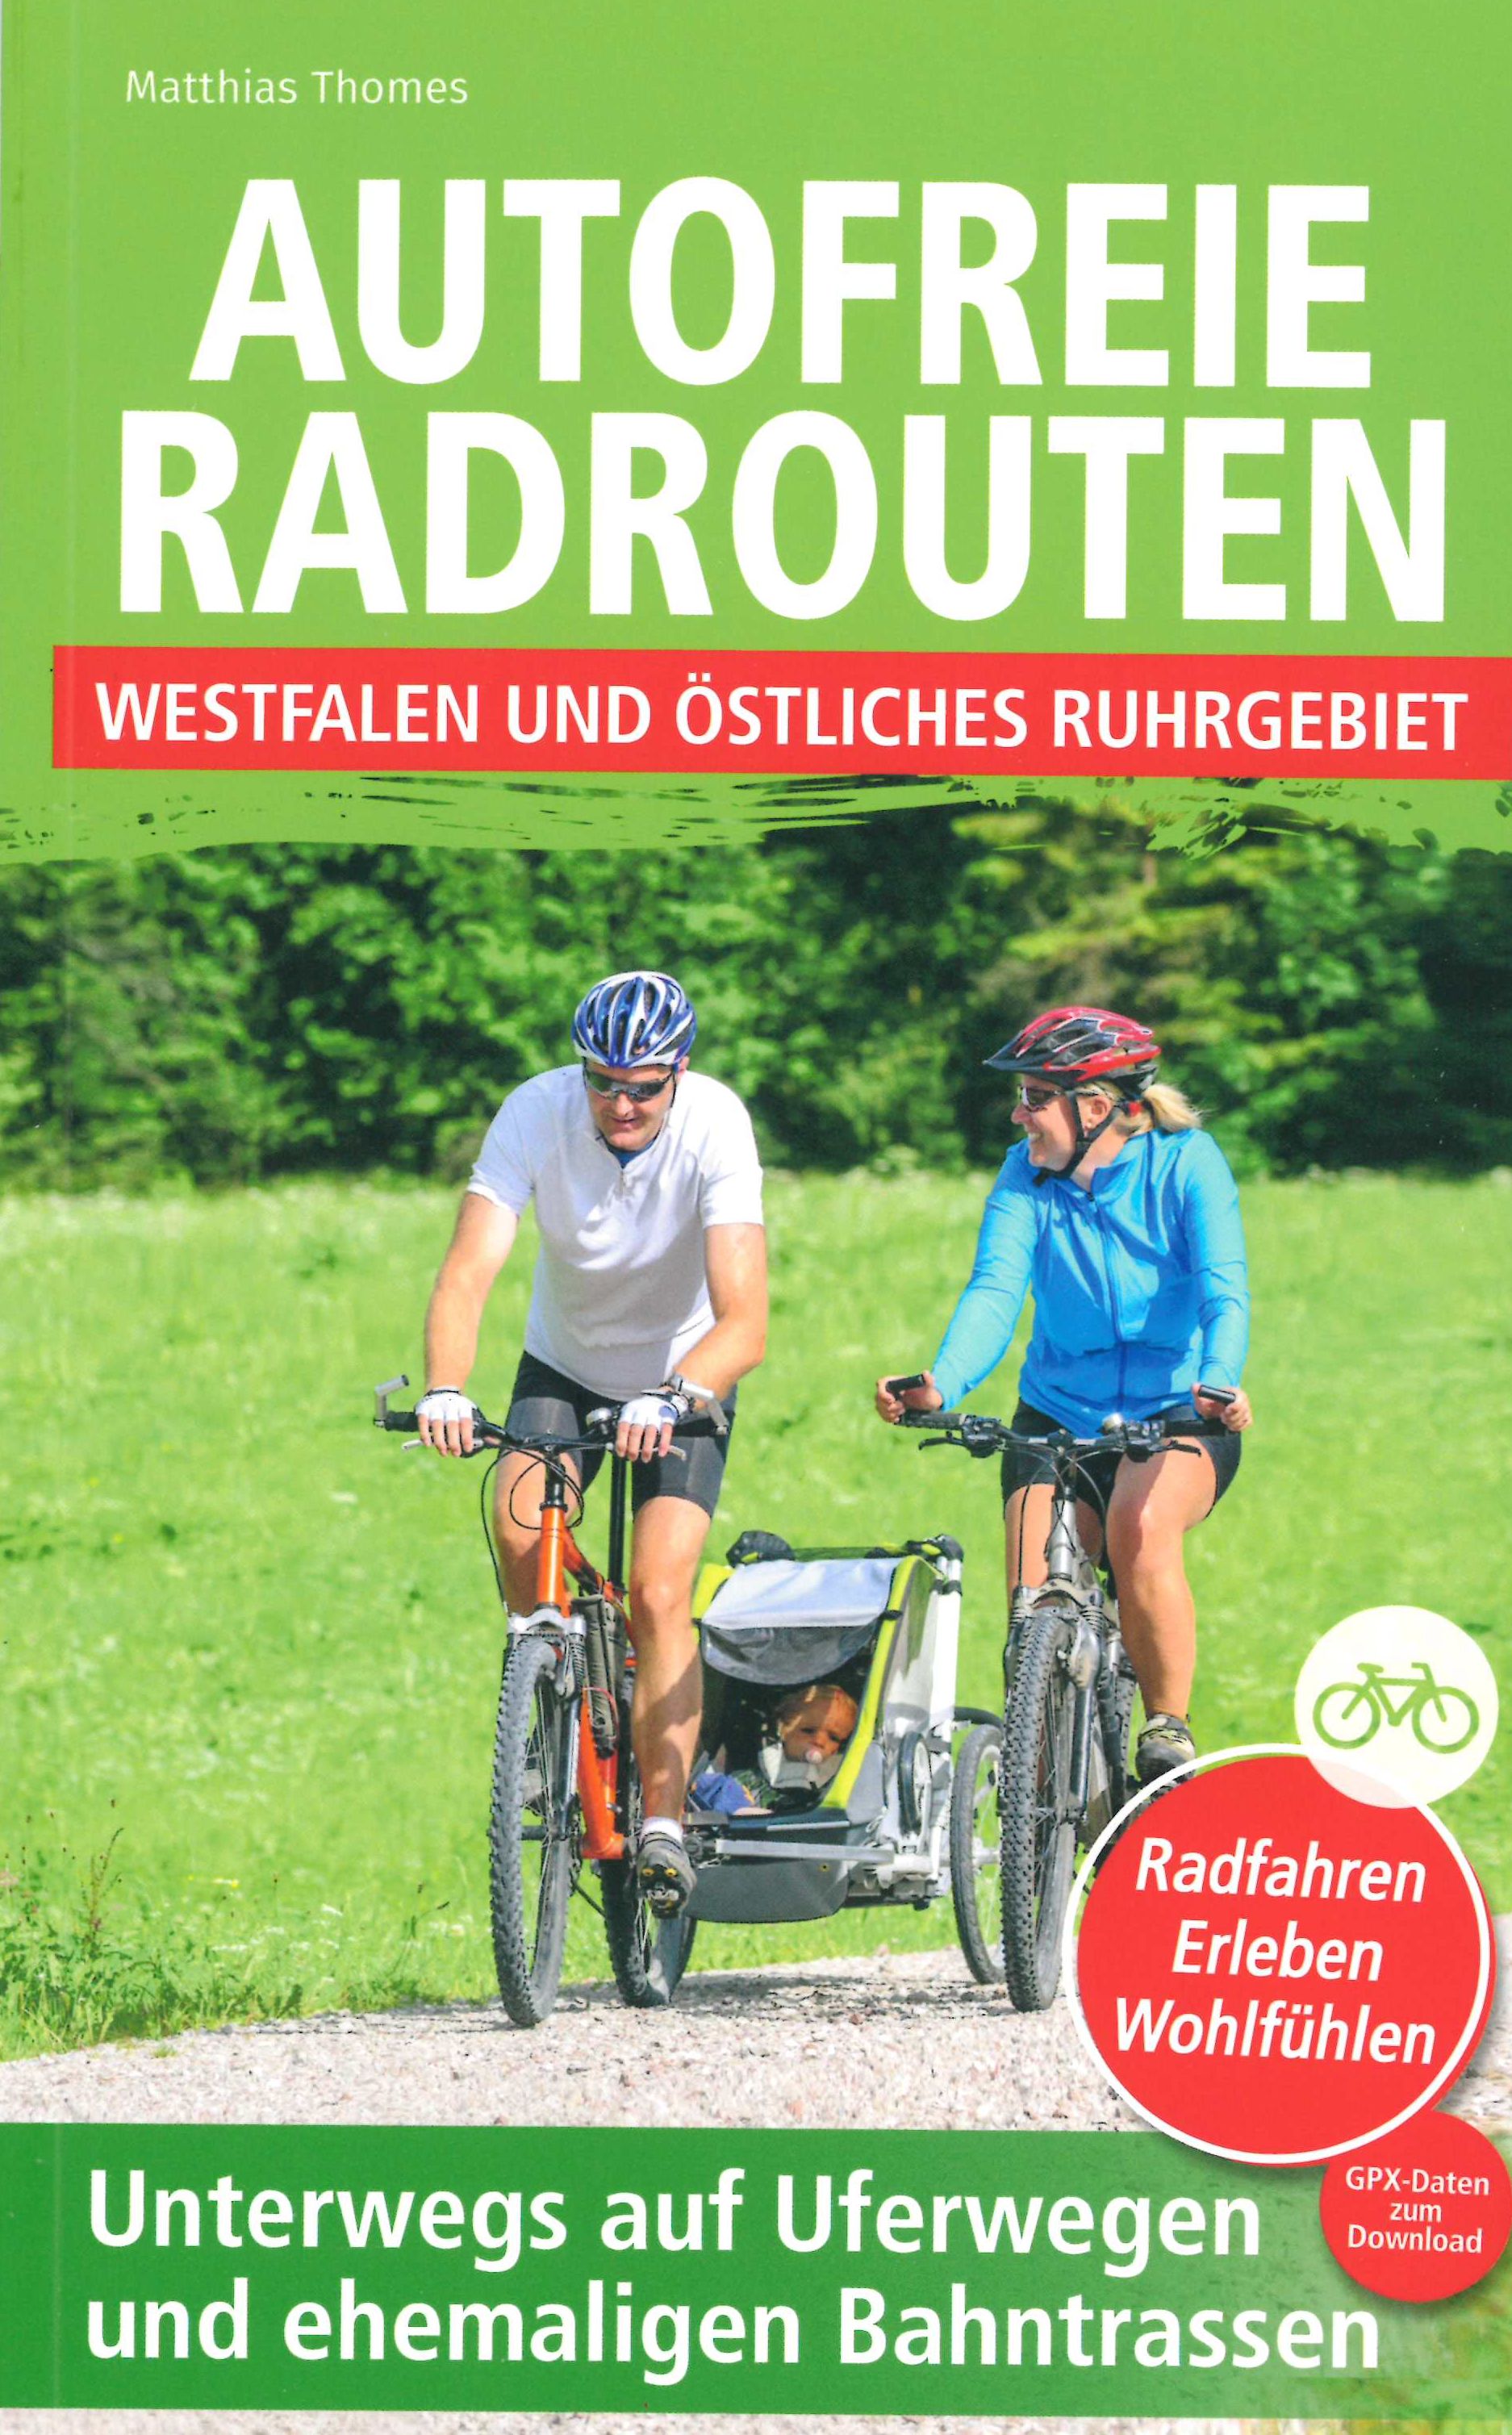 Radreiseführer Autofreie Radrouten Ruhrgebiet